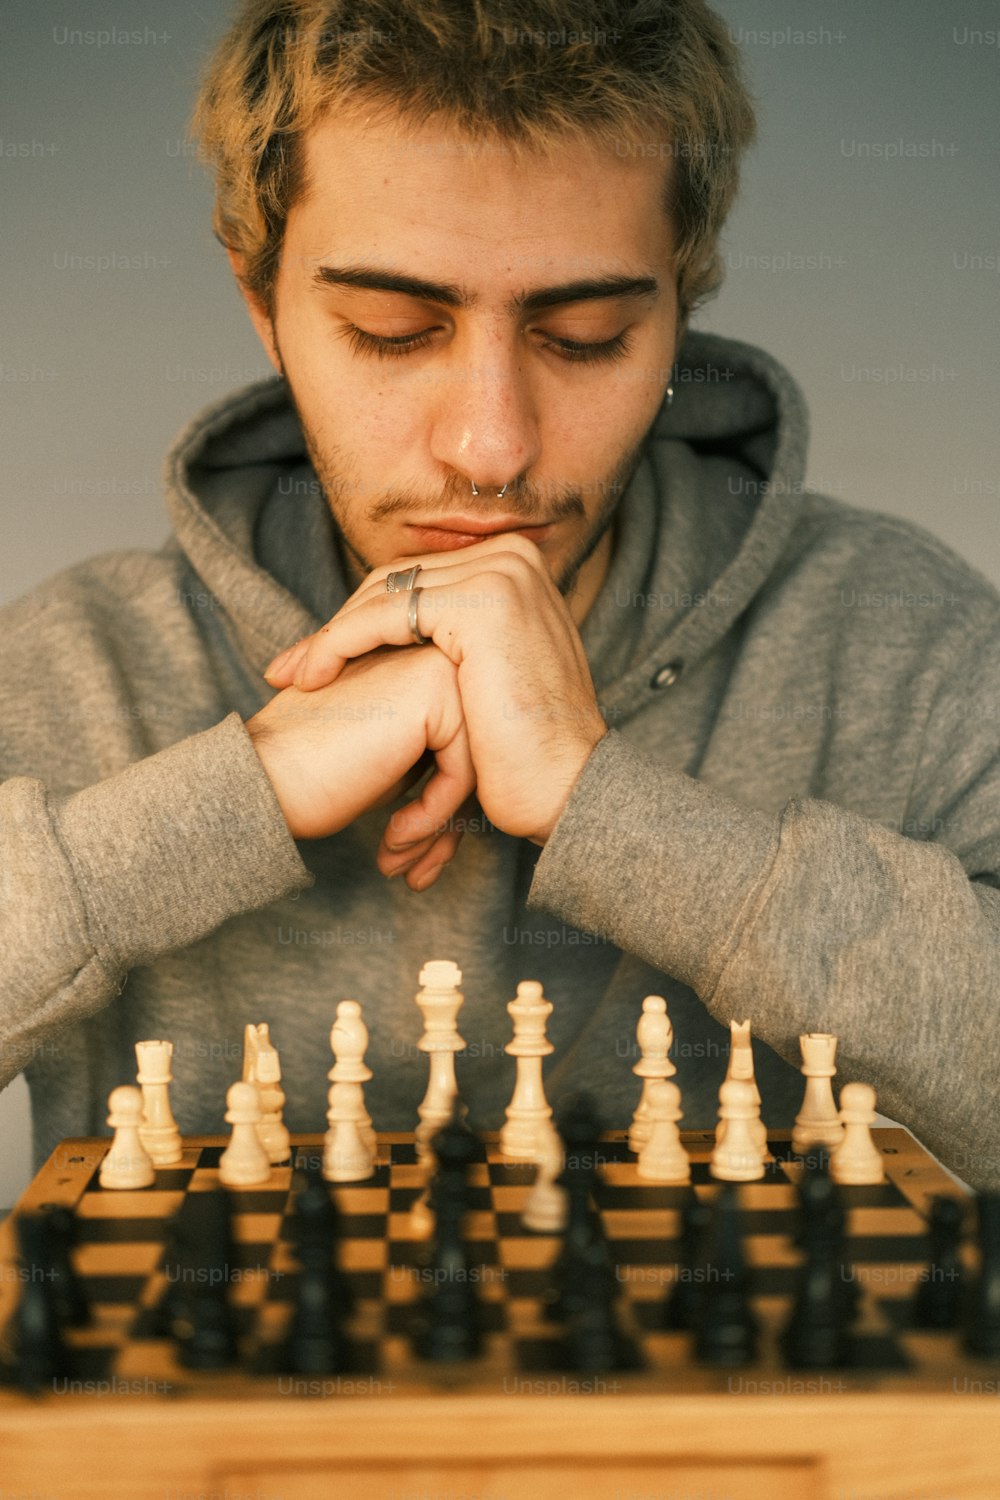 체스 보드가있는 테이블에 앉아있는 남자